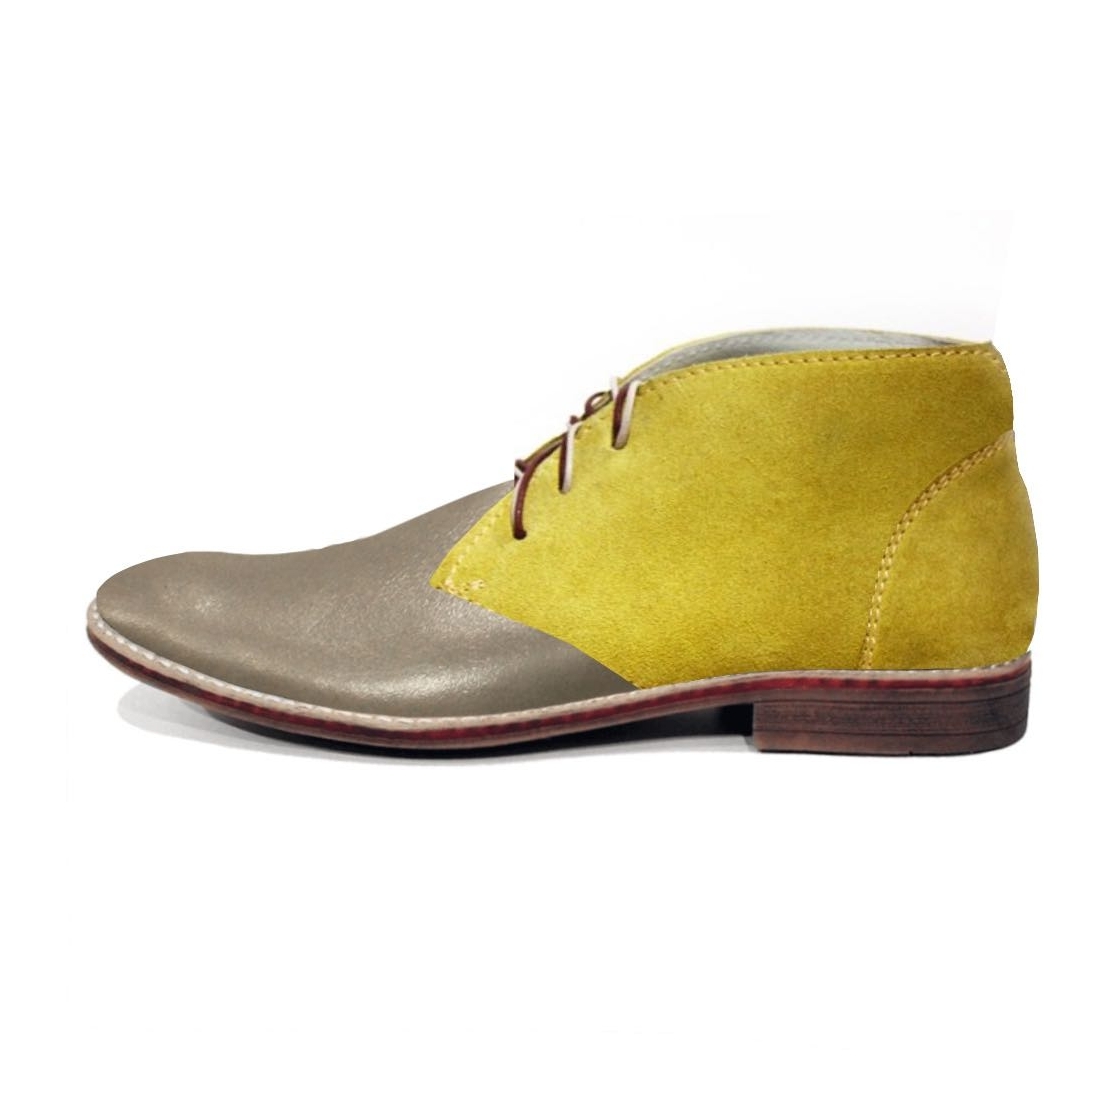 Modello Terrano - Buty Chukka - Handmade Colorful Italian Leather Shoes